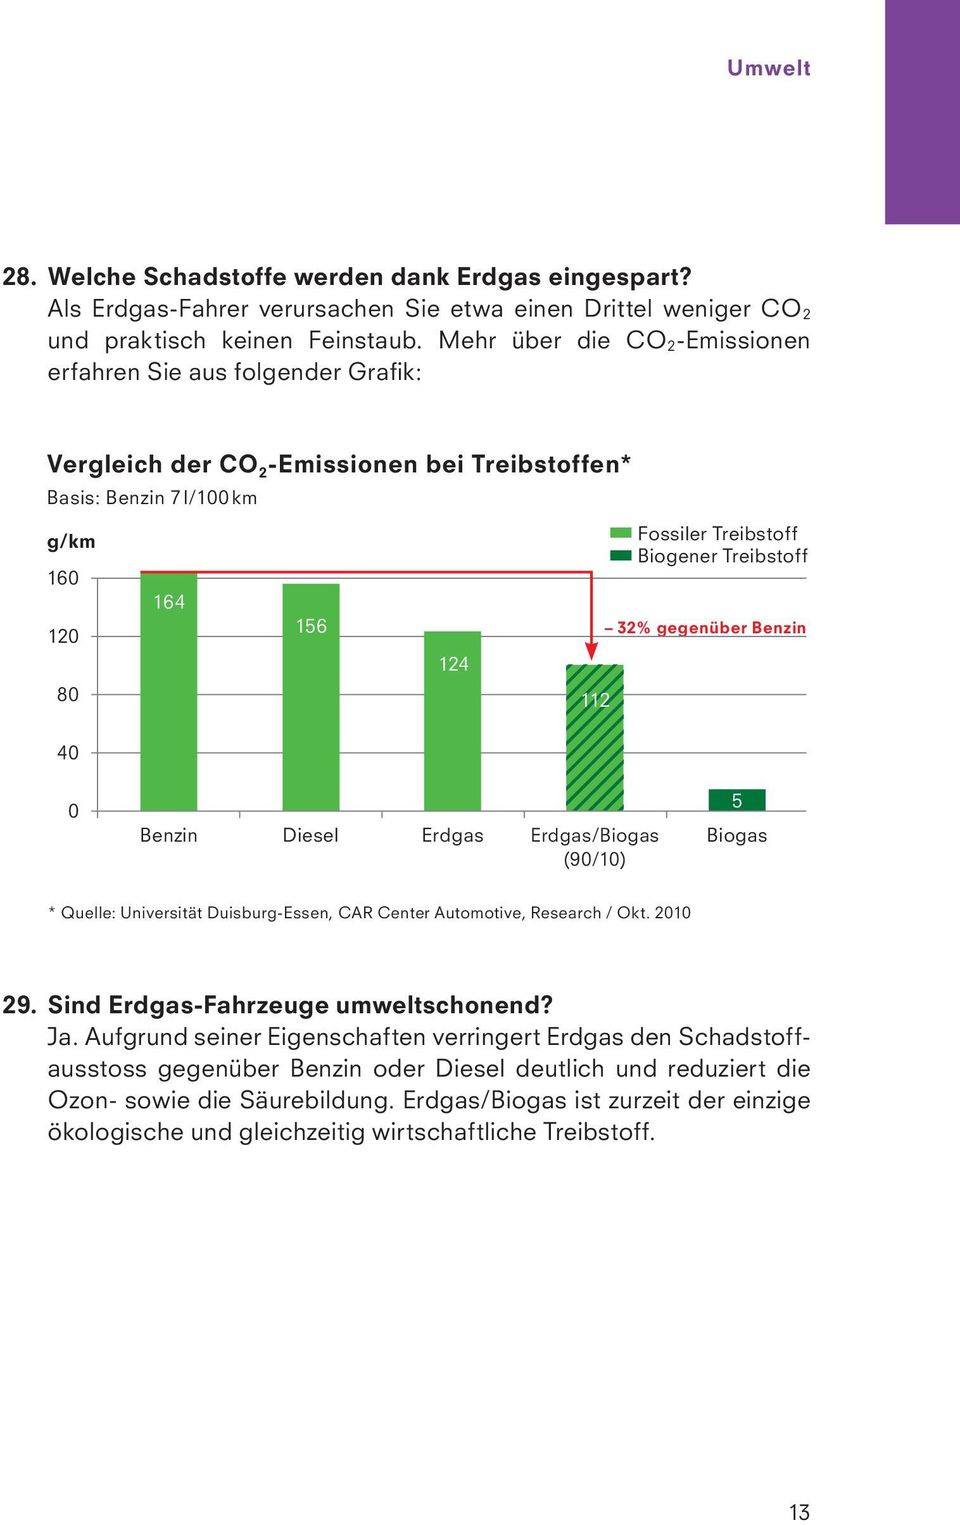 Biogener Treibstoff 32% gegenüber Benzin 0 Benzin Diesel Erdgas Erdgas/Biogas (90/10) 5 Biogas * Quelle: Universität Duisburg-Essen, CAR Center Automotive, Research / Okt. 2010 29.